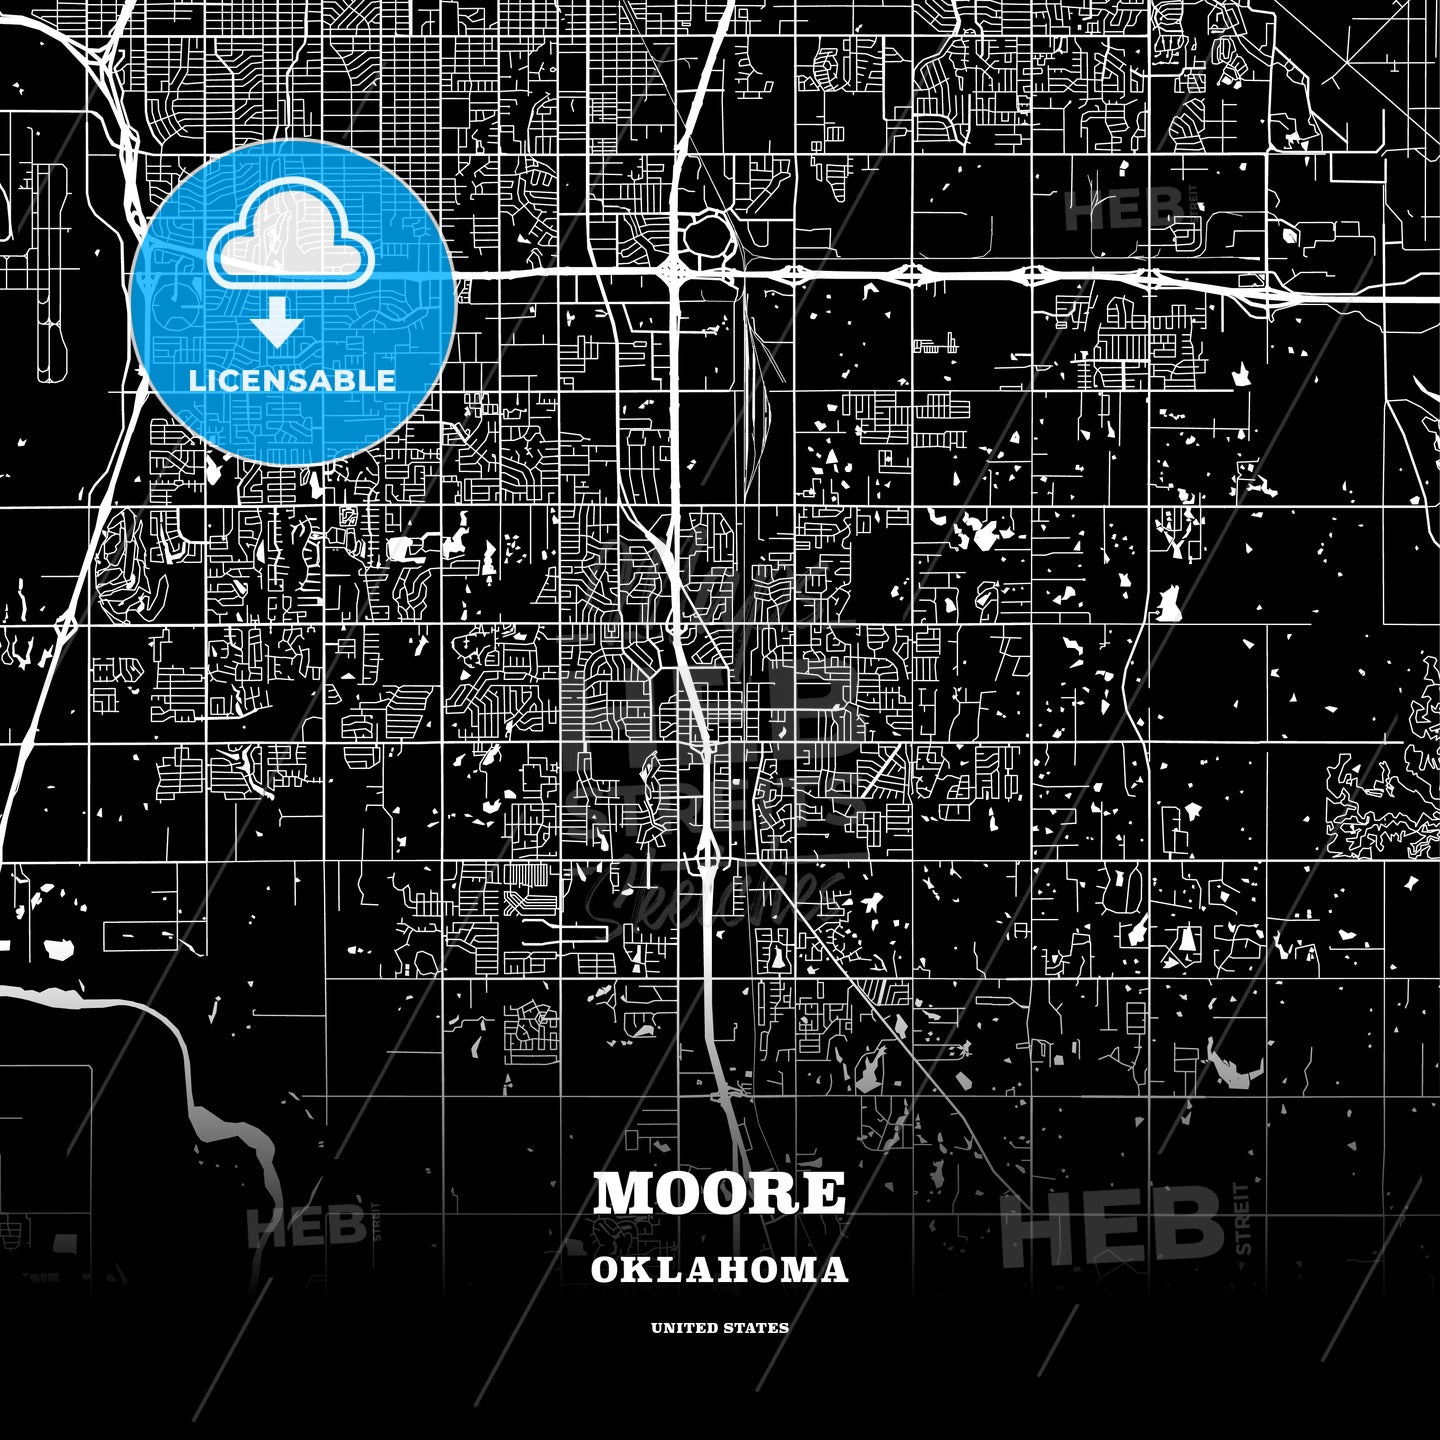 Moore, Oklahoma, USA map